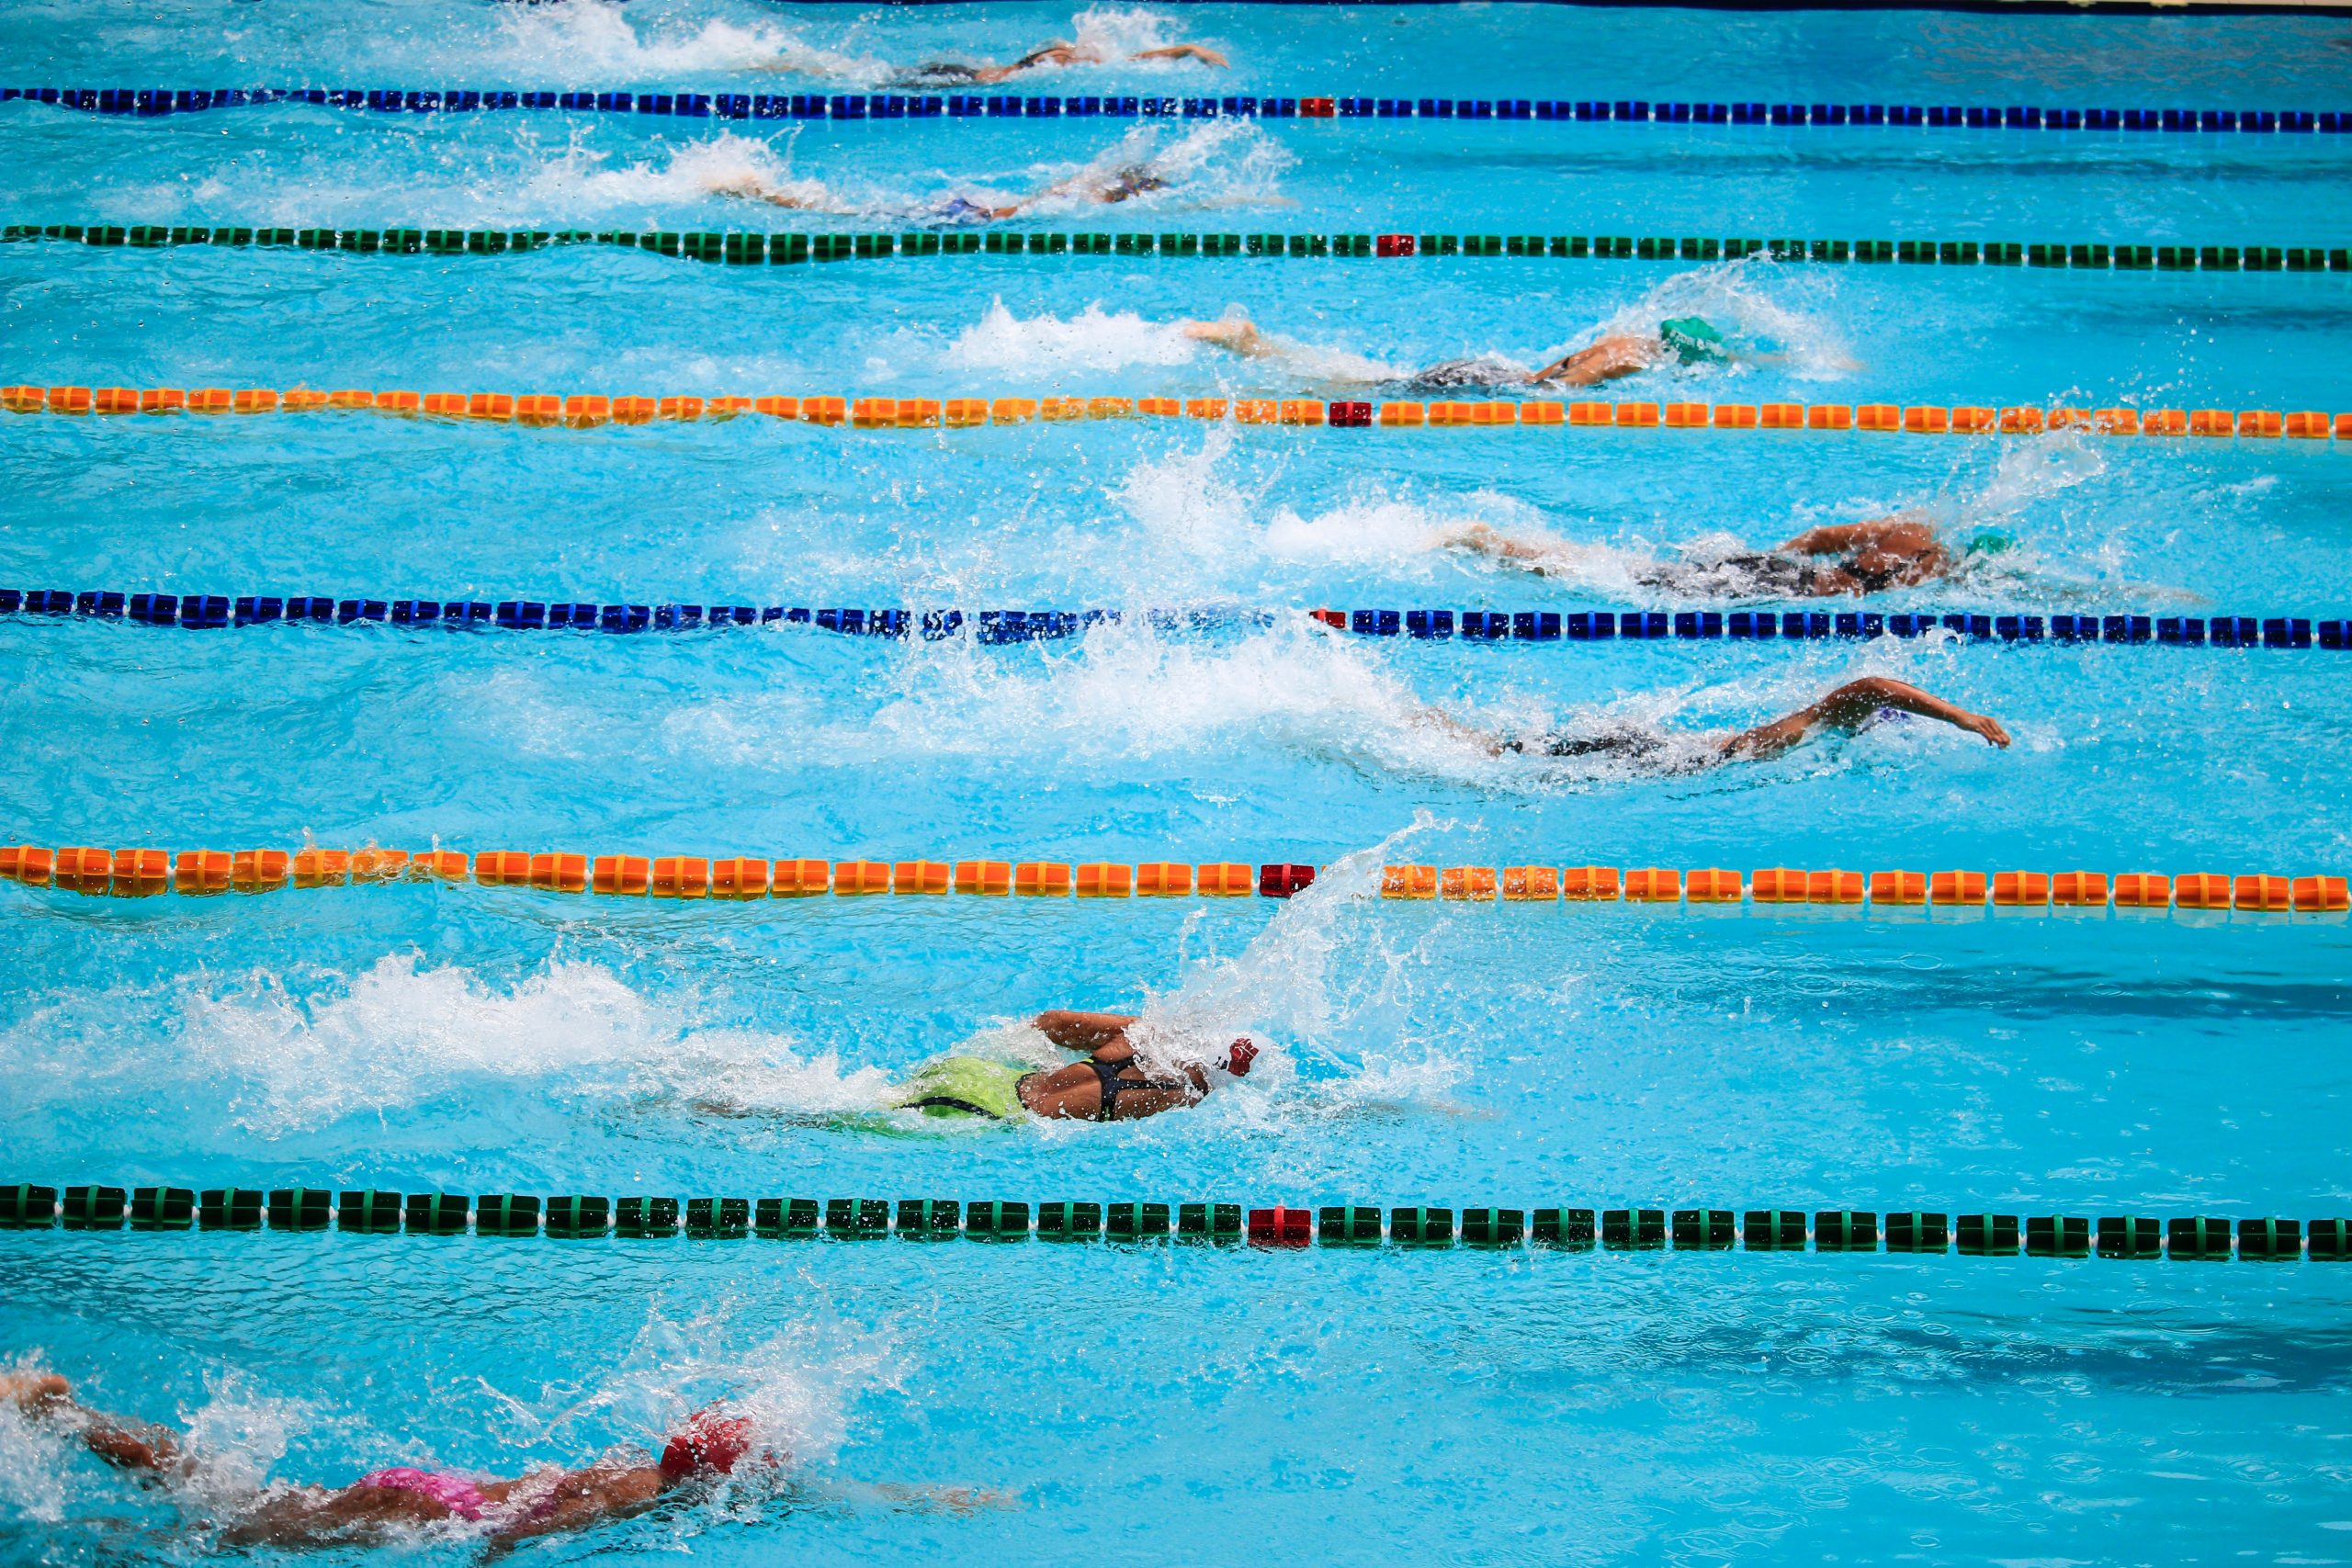 Zawody pływackie. Siedmioro zawodników płynie stylem dowolnym. Widok z boku